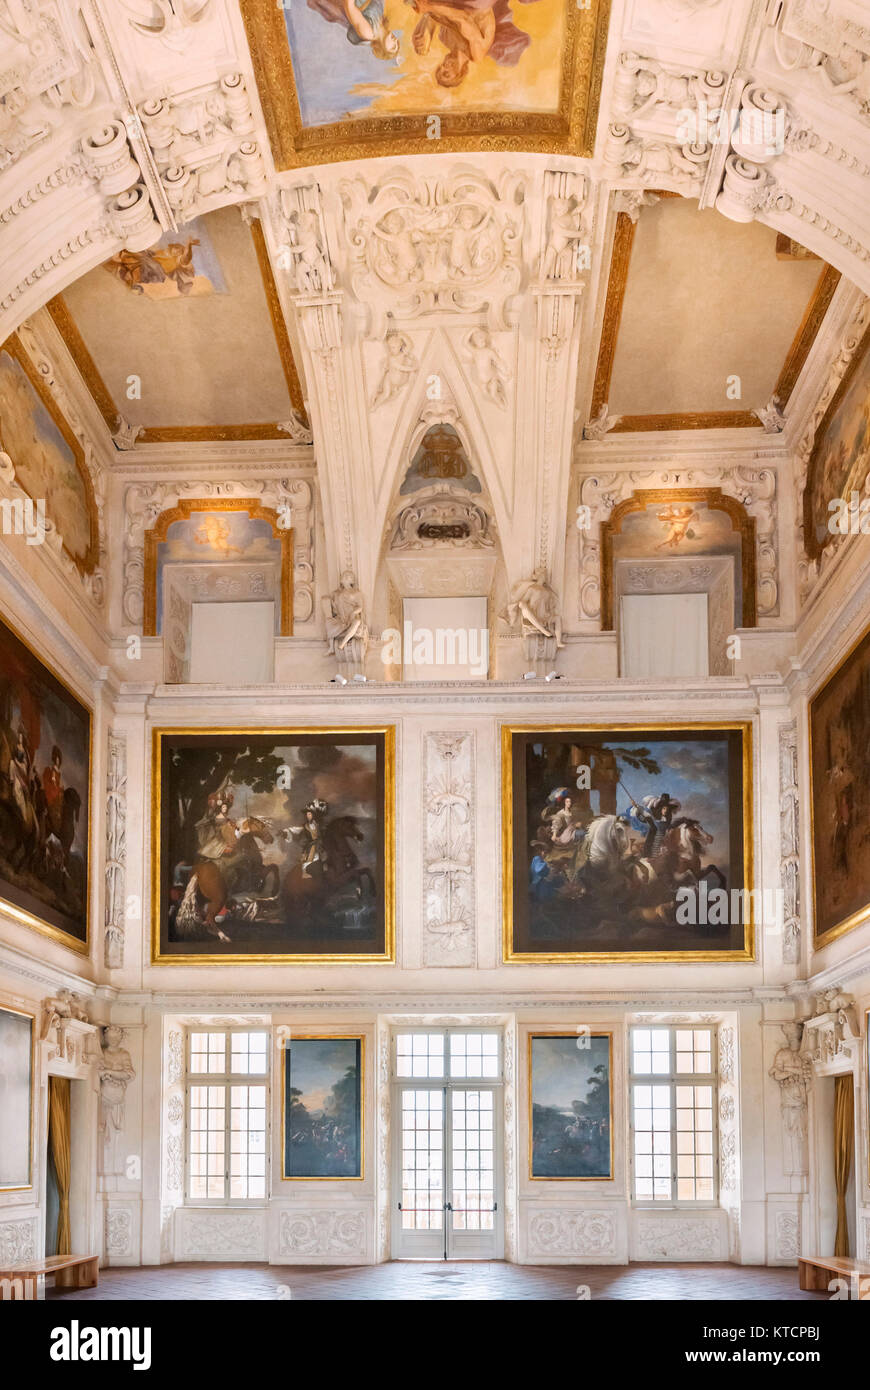 Interno della Reggia di Venaria Reale (Palazzo Reale), Venaria Reale, vicino a Torino, Piemonte, Italia Foto Stock